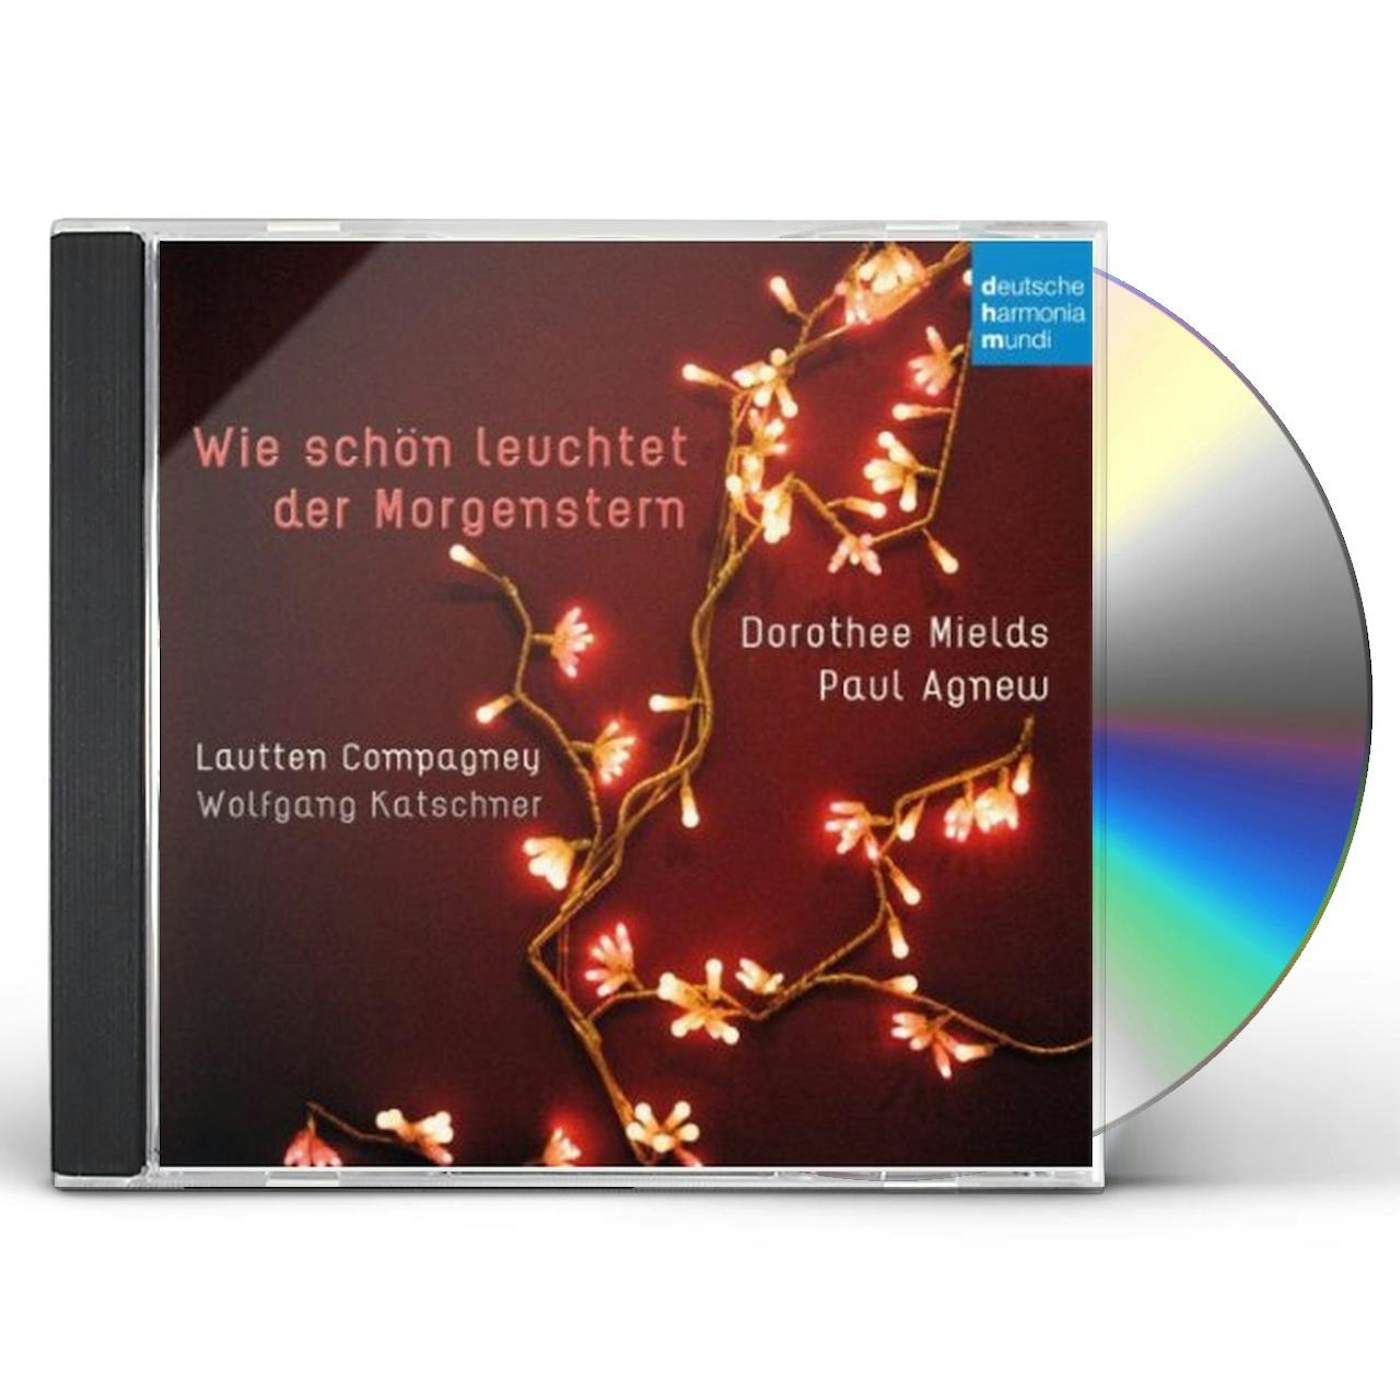 Lautten Compagney WIE SCHON LEUCHTET DER MORGENSTERN CD